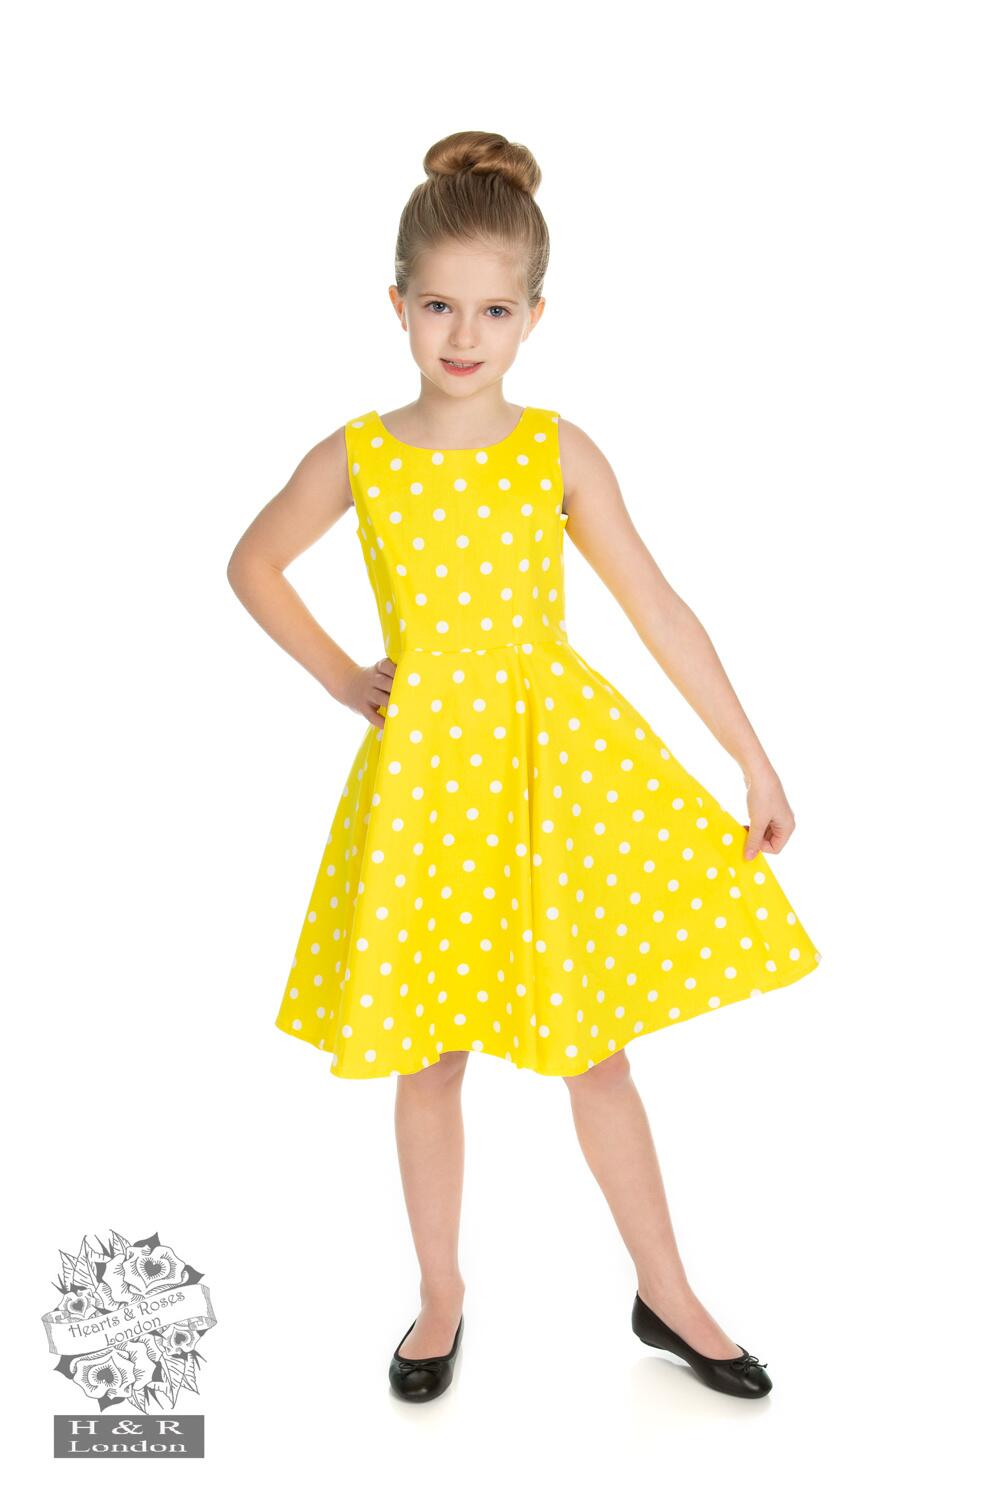 Normalt ledsager sikring Køb gul børne kjole - Price: 250,00,-